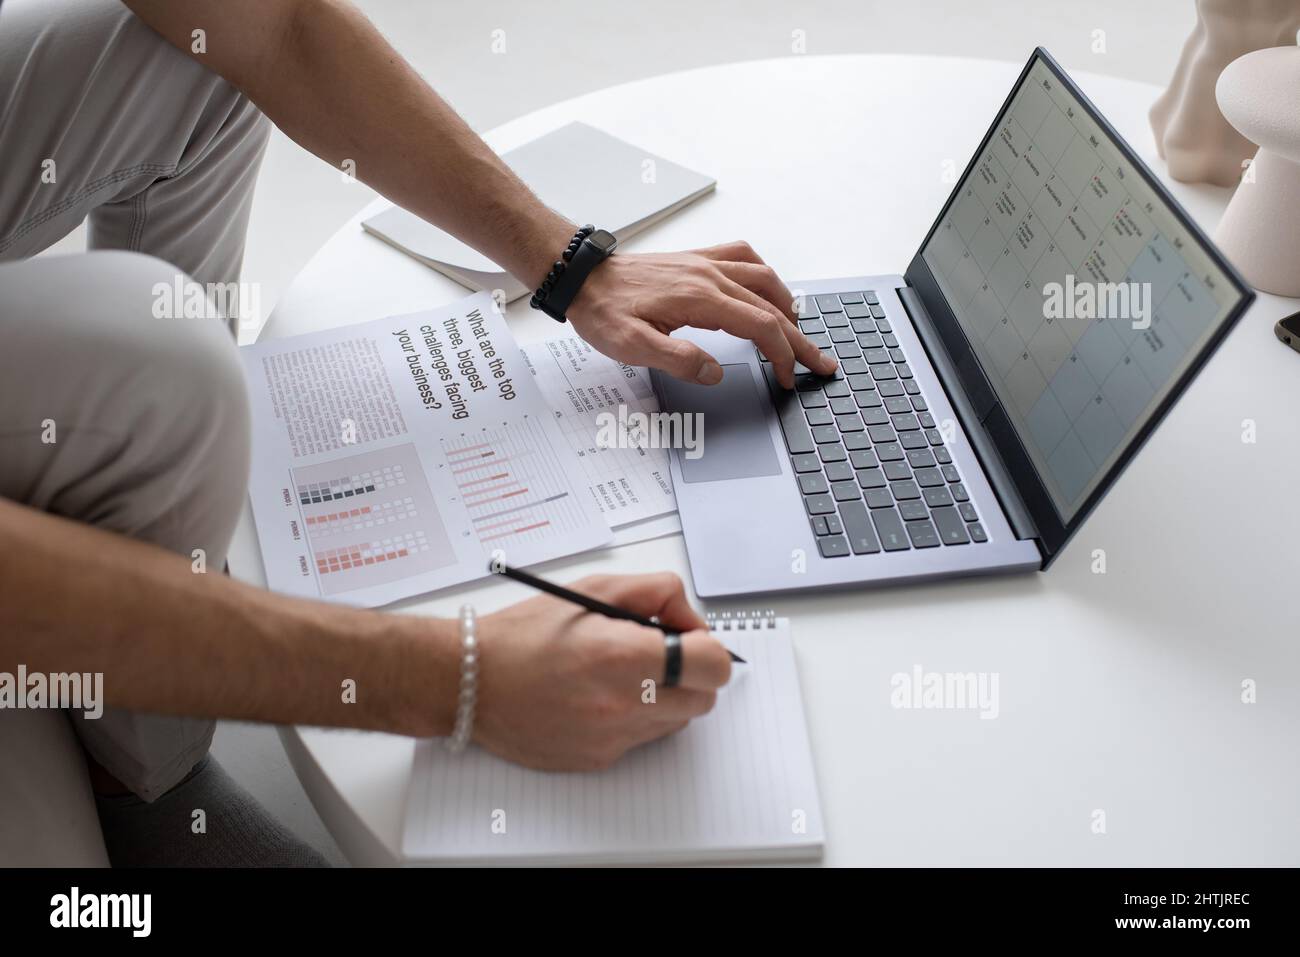 Mano di un giovane auditor maschio o analista che guarda attraverso il documento sullo schermo del laptop mentre si preme uno dei tasti della tastiera Foto Stock